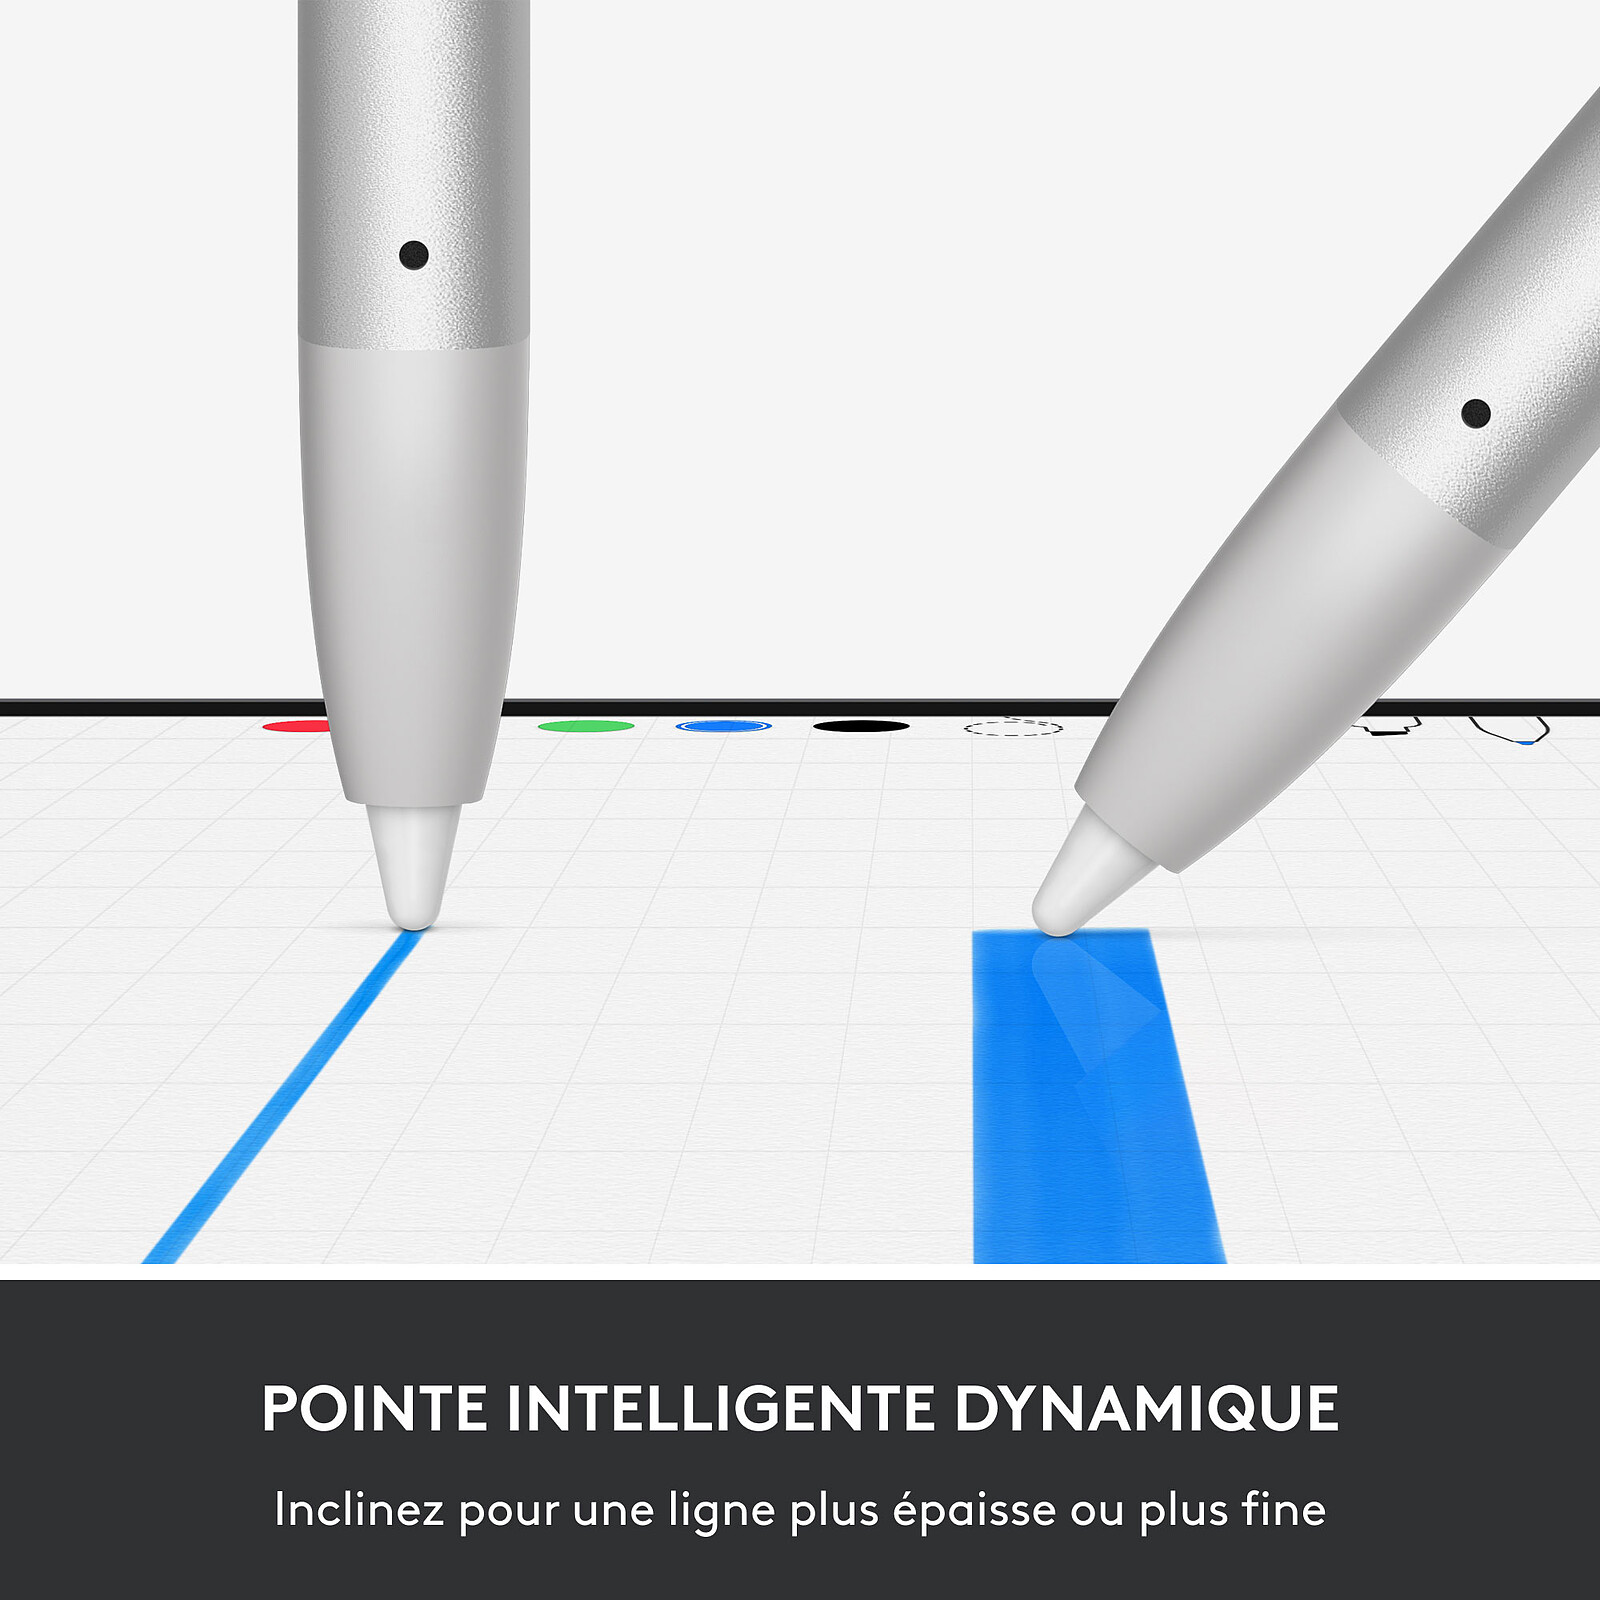 Logitech Crayon para iPad - Tecnología de lápiz digital Apple